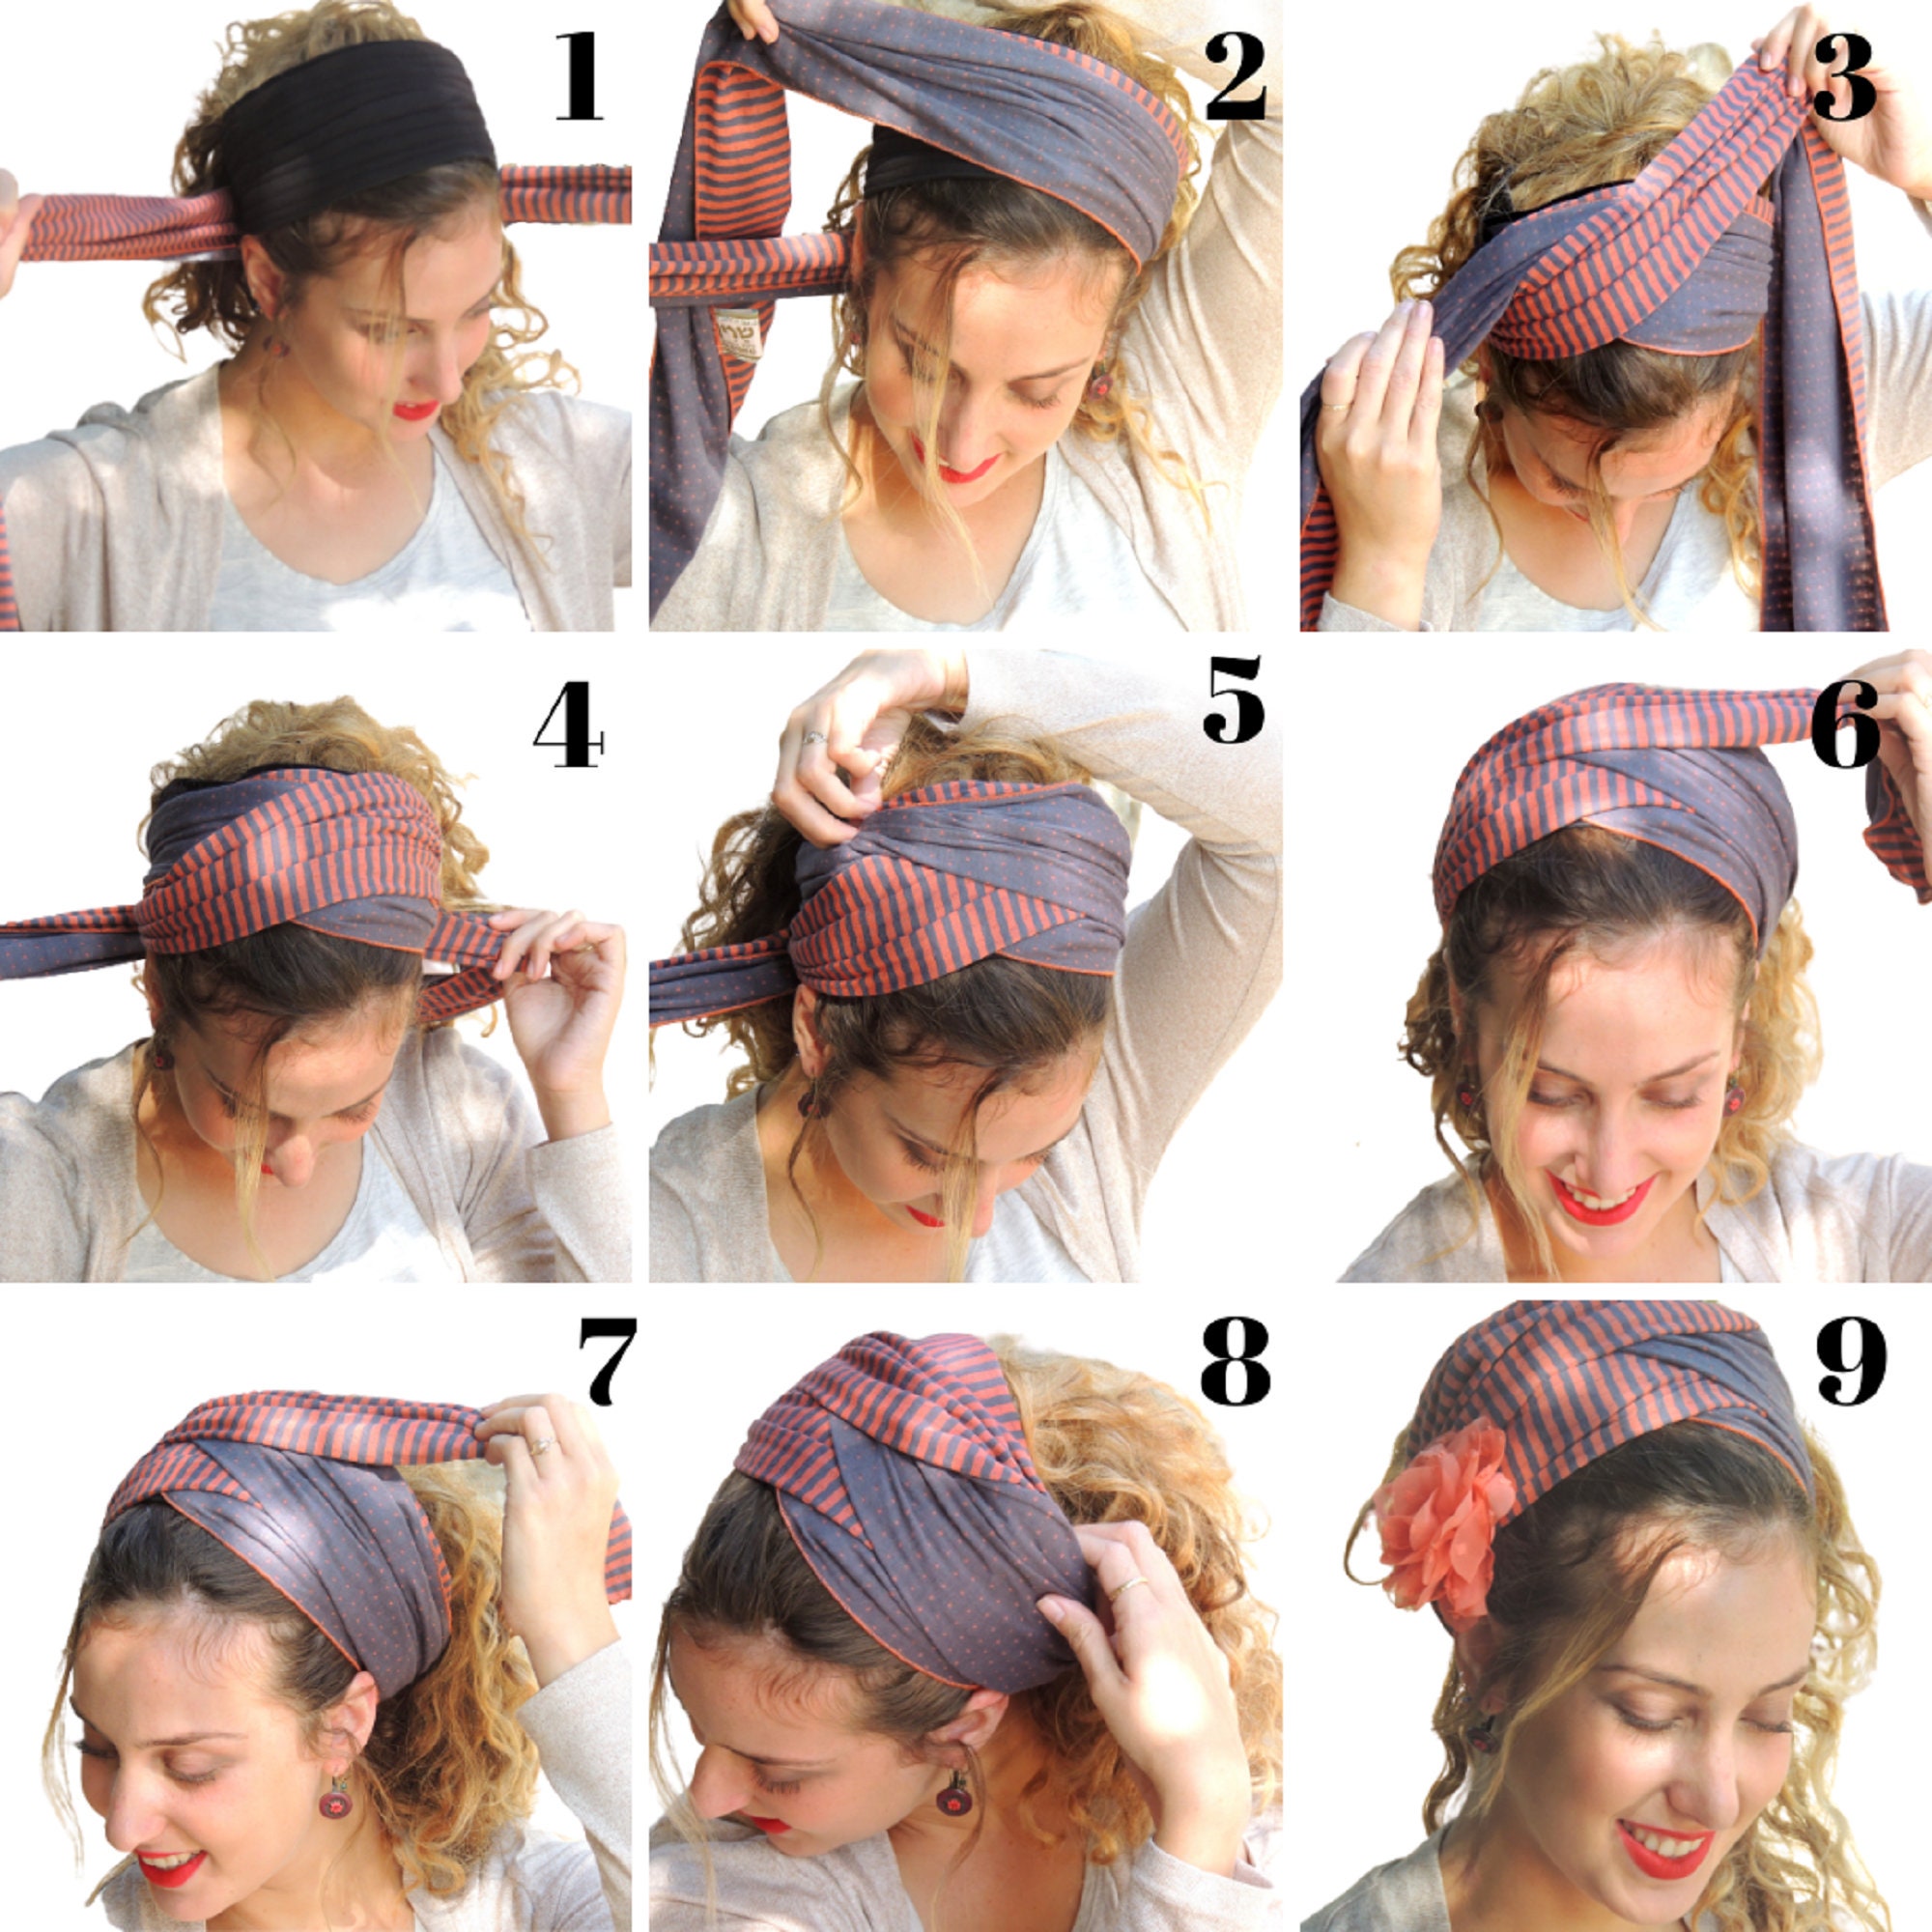 Красиво завязать платок на голове летом. Способы завязывания платка на голове. Как красиво завязать платок на голове. Шарфик на голову летом. Красиво повязать платок на голову летом.